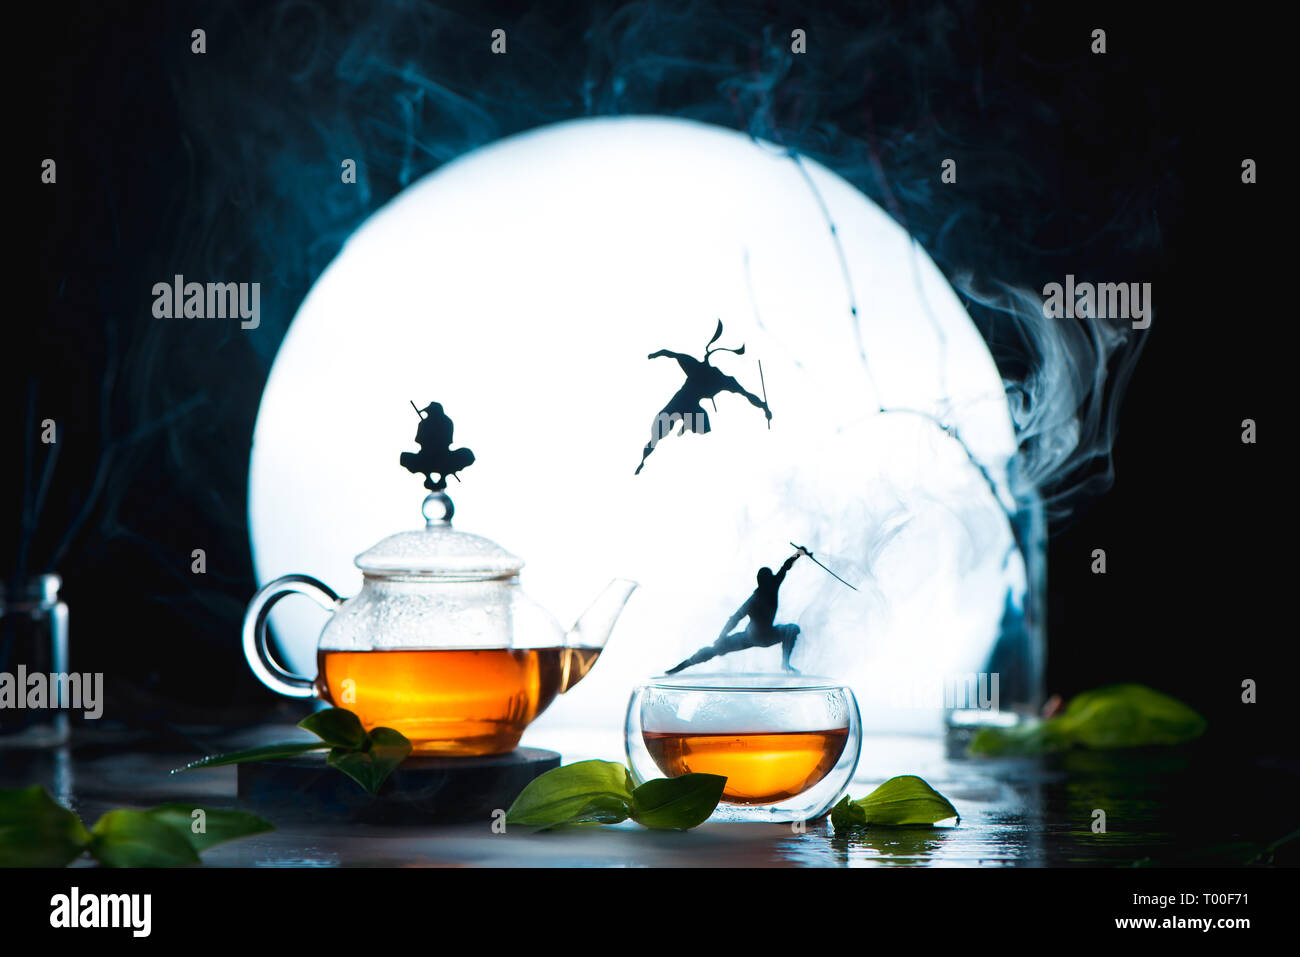 Fotografía TÉ conceptual con ninja siluetas en tazas de té. Bebida caliente creativo encabezado con luna llena y espacio de copia Foto de stock